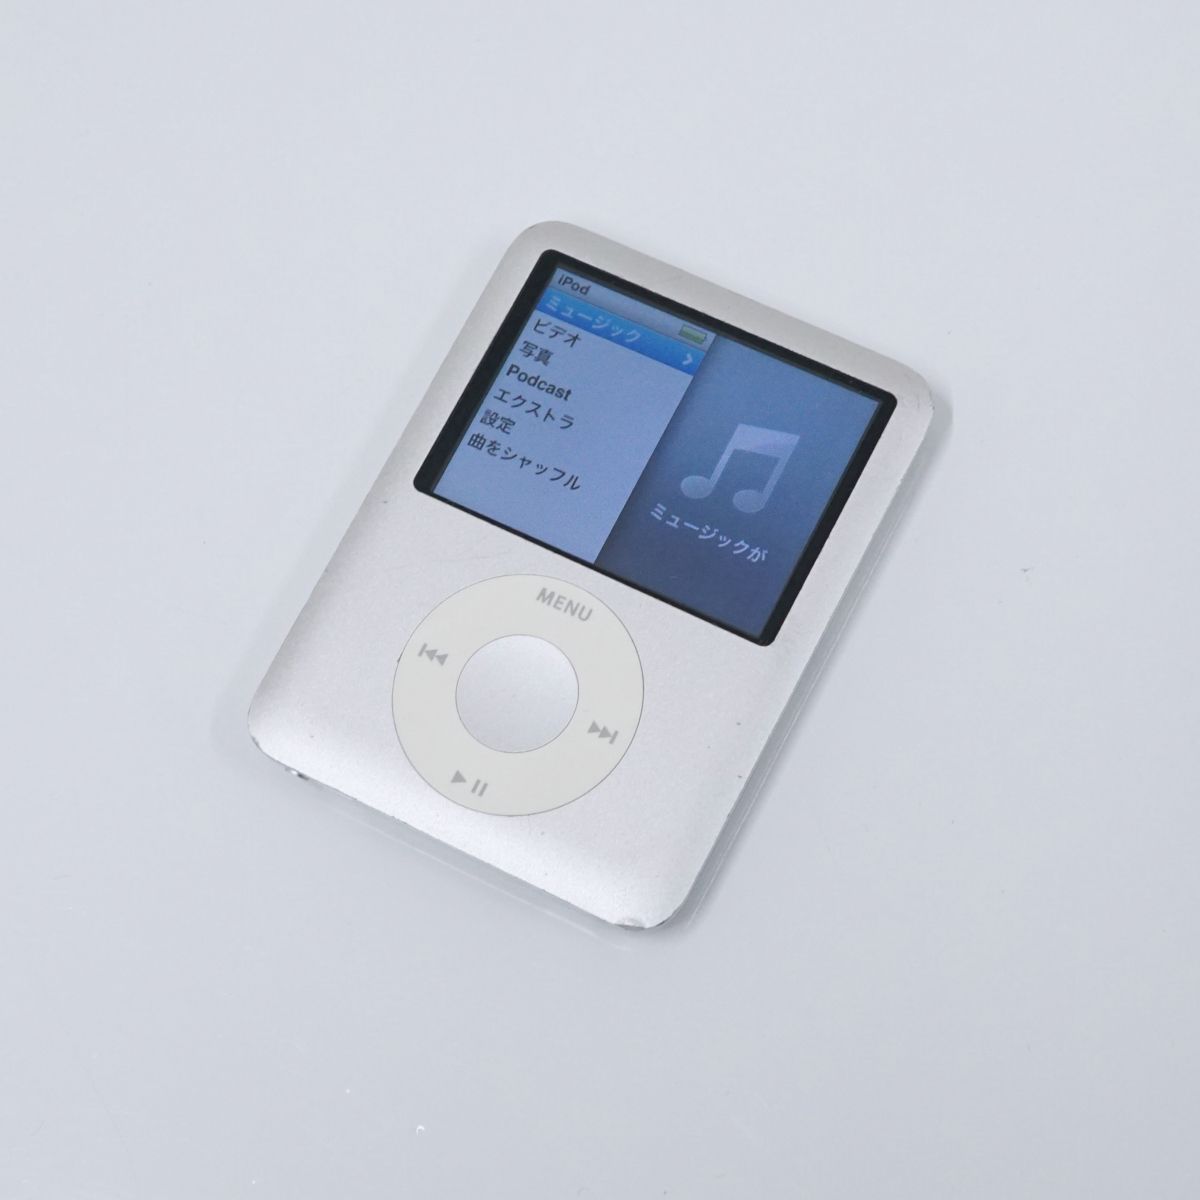 Apple アップル iPod nano アイポッドナノ 4GB USED品 第3世代 シルバー MA978CH A1236 完動品 T V8658